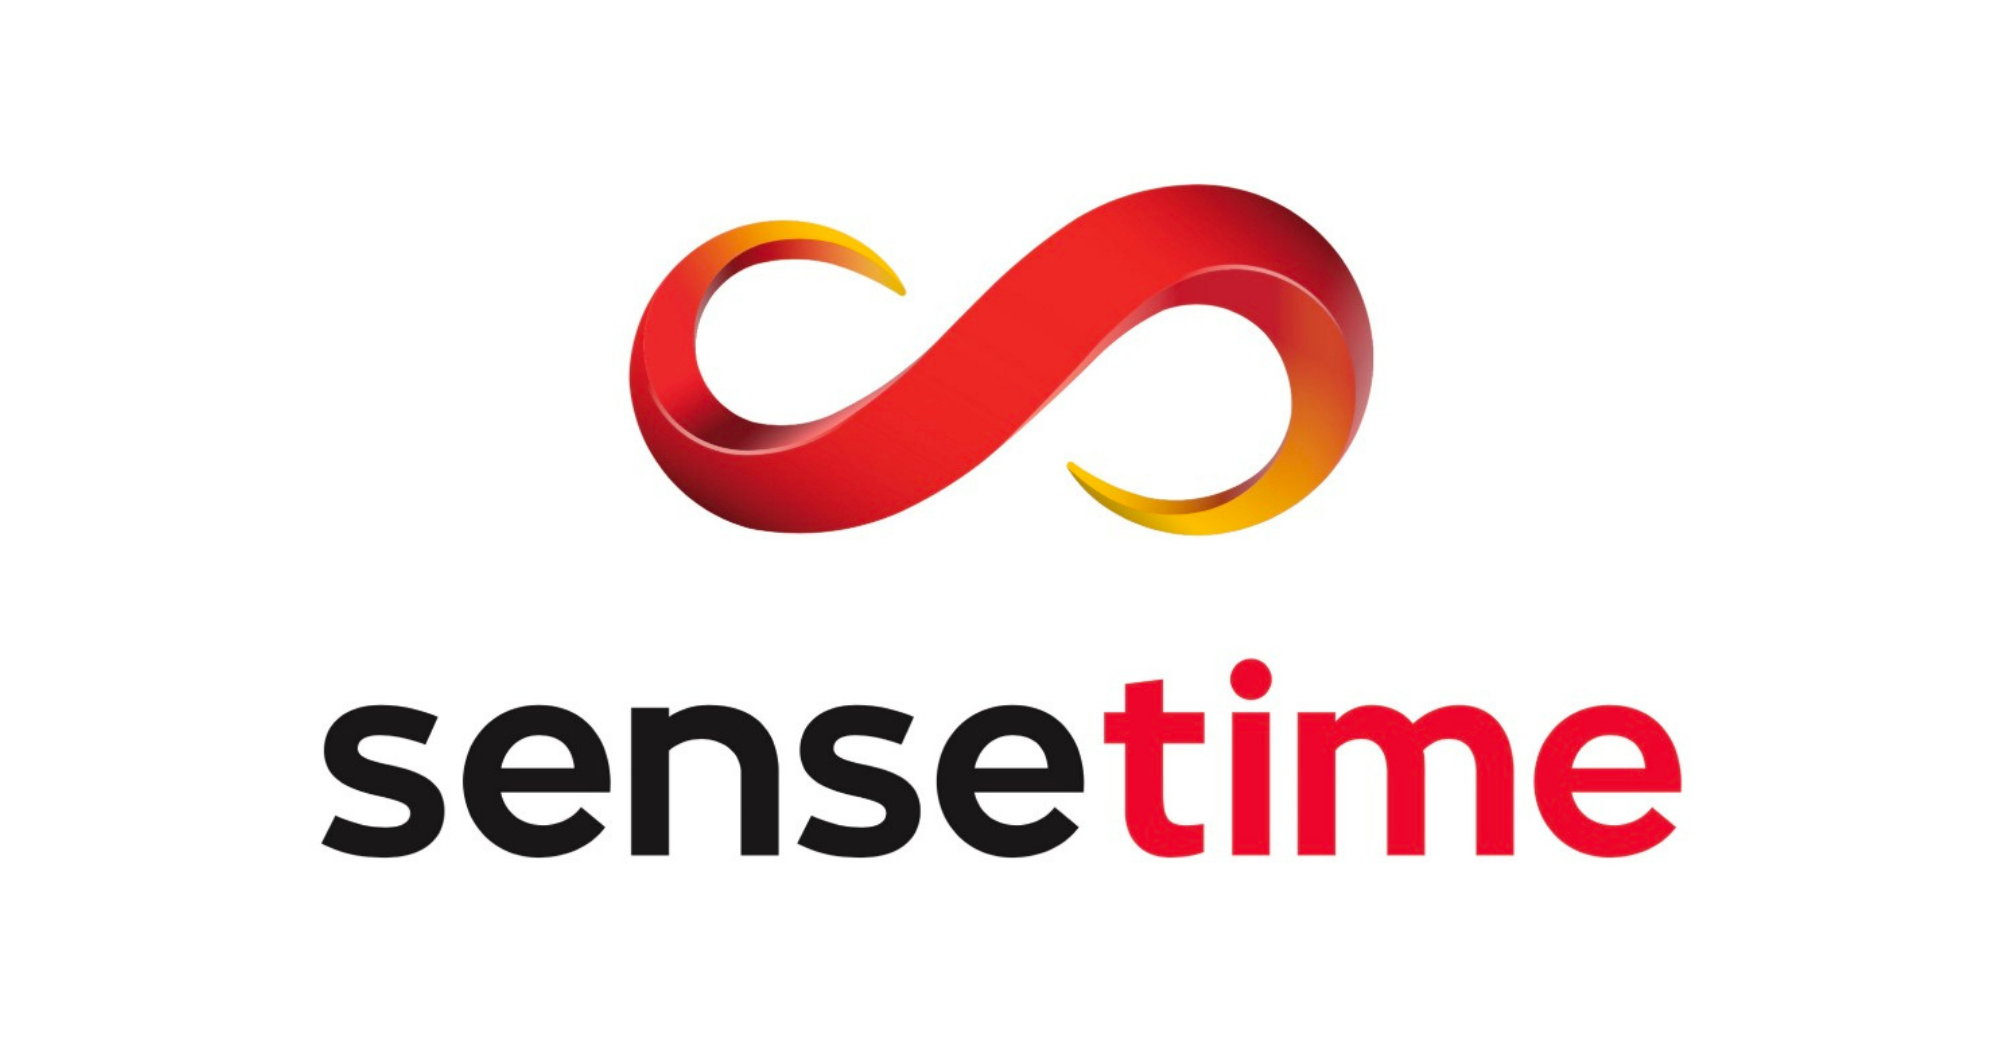 SenseTime ने शेयरों की बिक्री शुरू की, 1.5 बिलियन शेयर जारी किए और $7691.8 मिलियन तक जुटाए